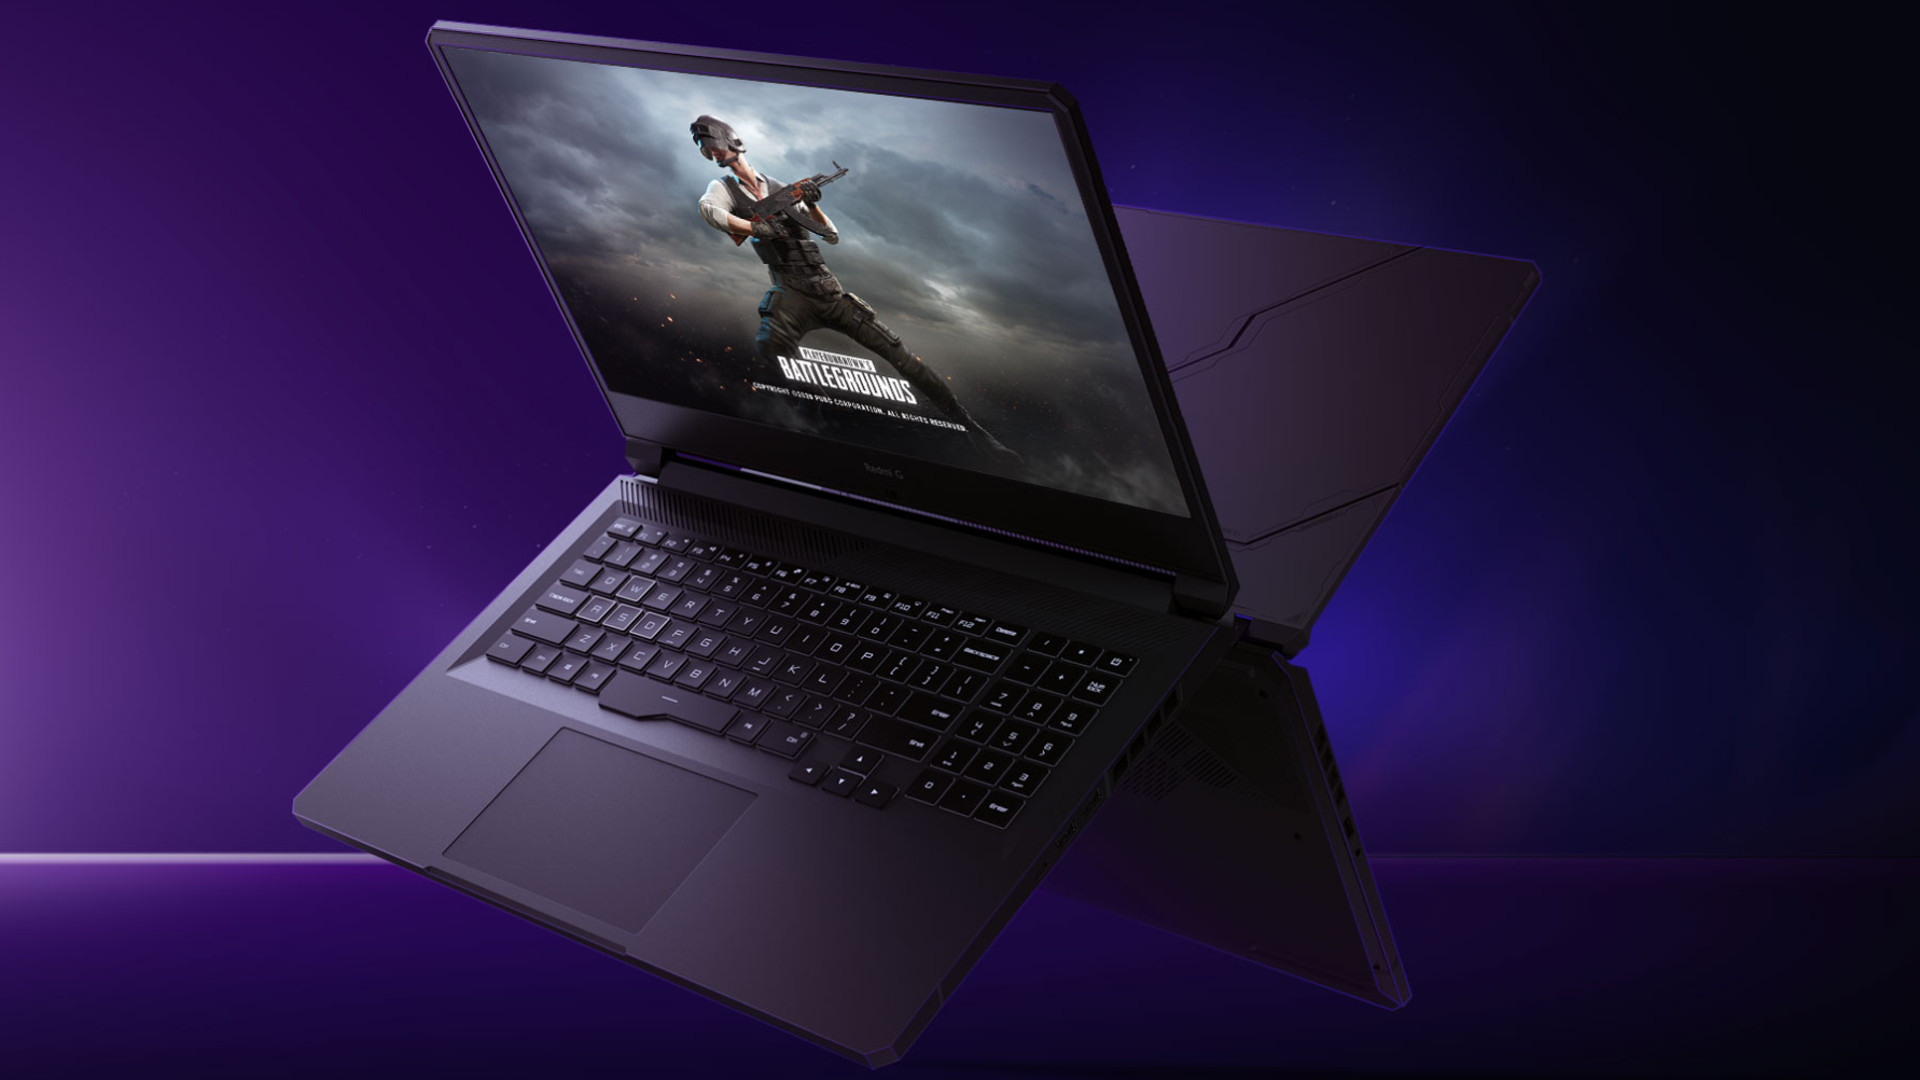 Sforum - Trang thông tin công nghệ mới nhất Redmi-G-gaming-laptop-official Redmi G Gaming Laptop ra mắt: Màn hình 144Hz, 100% sRGB, Intel thế hệ 10, GTX 1650 Ti, giá từ 17.7 triệu đồng 